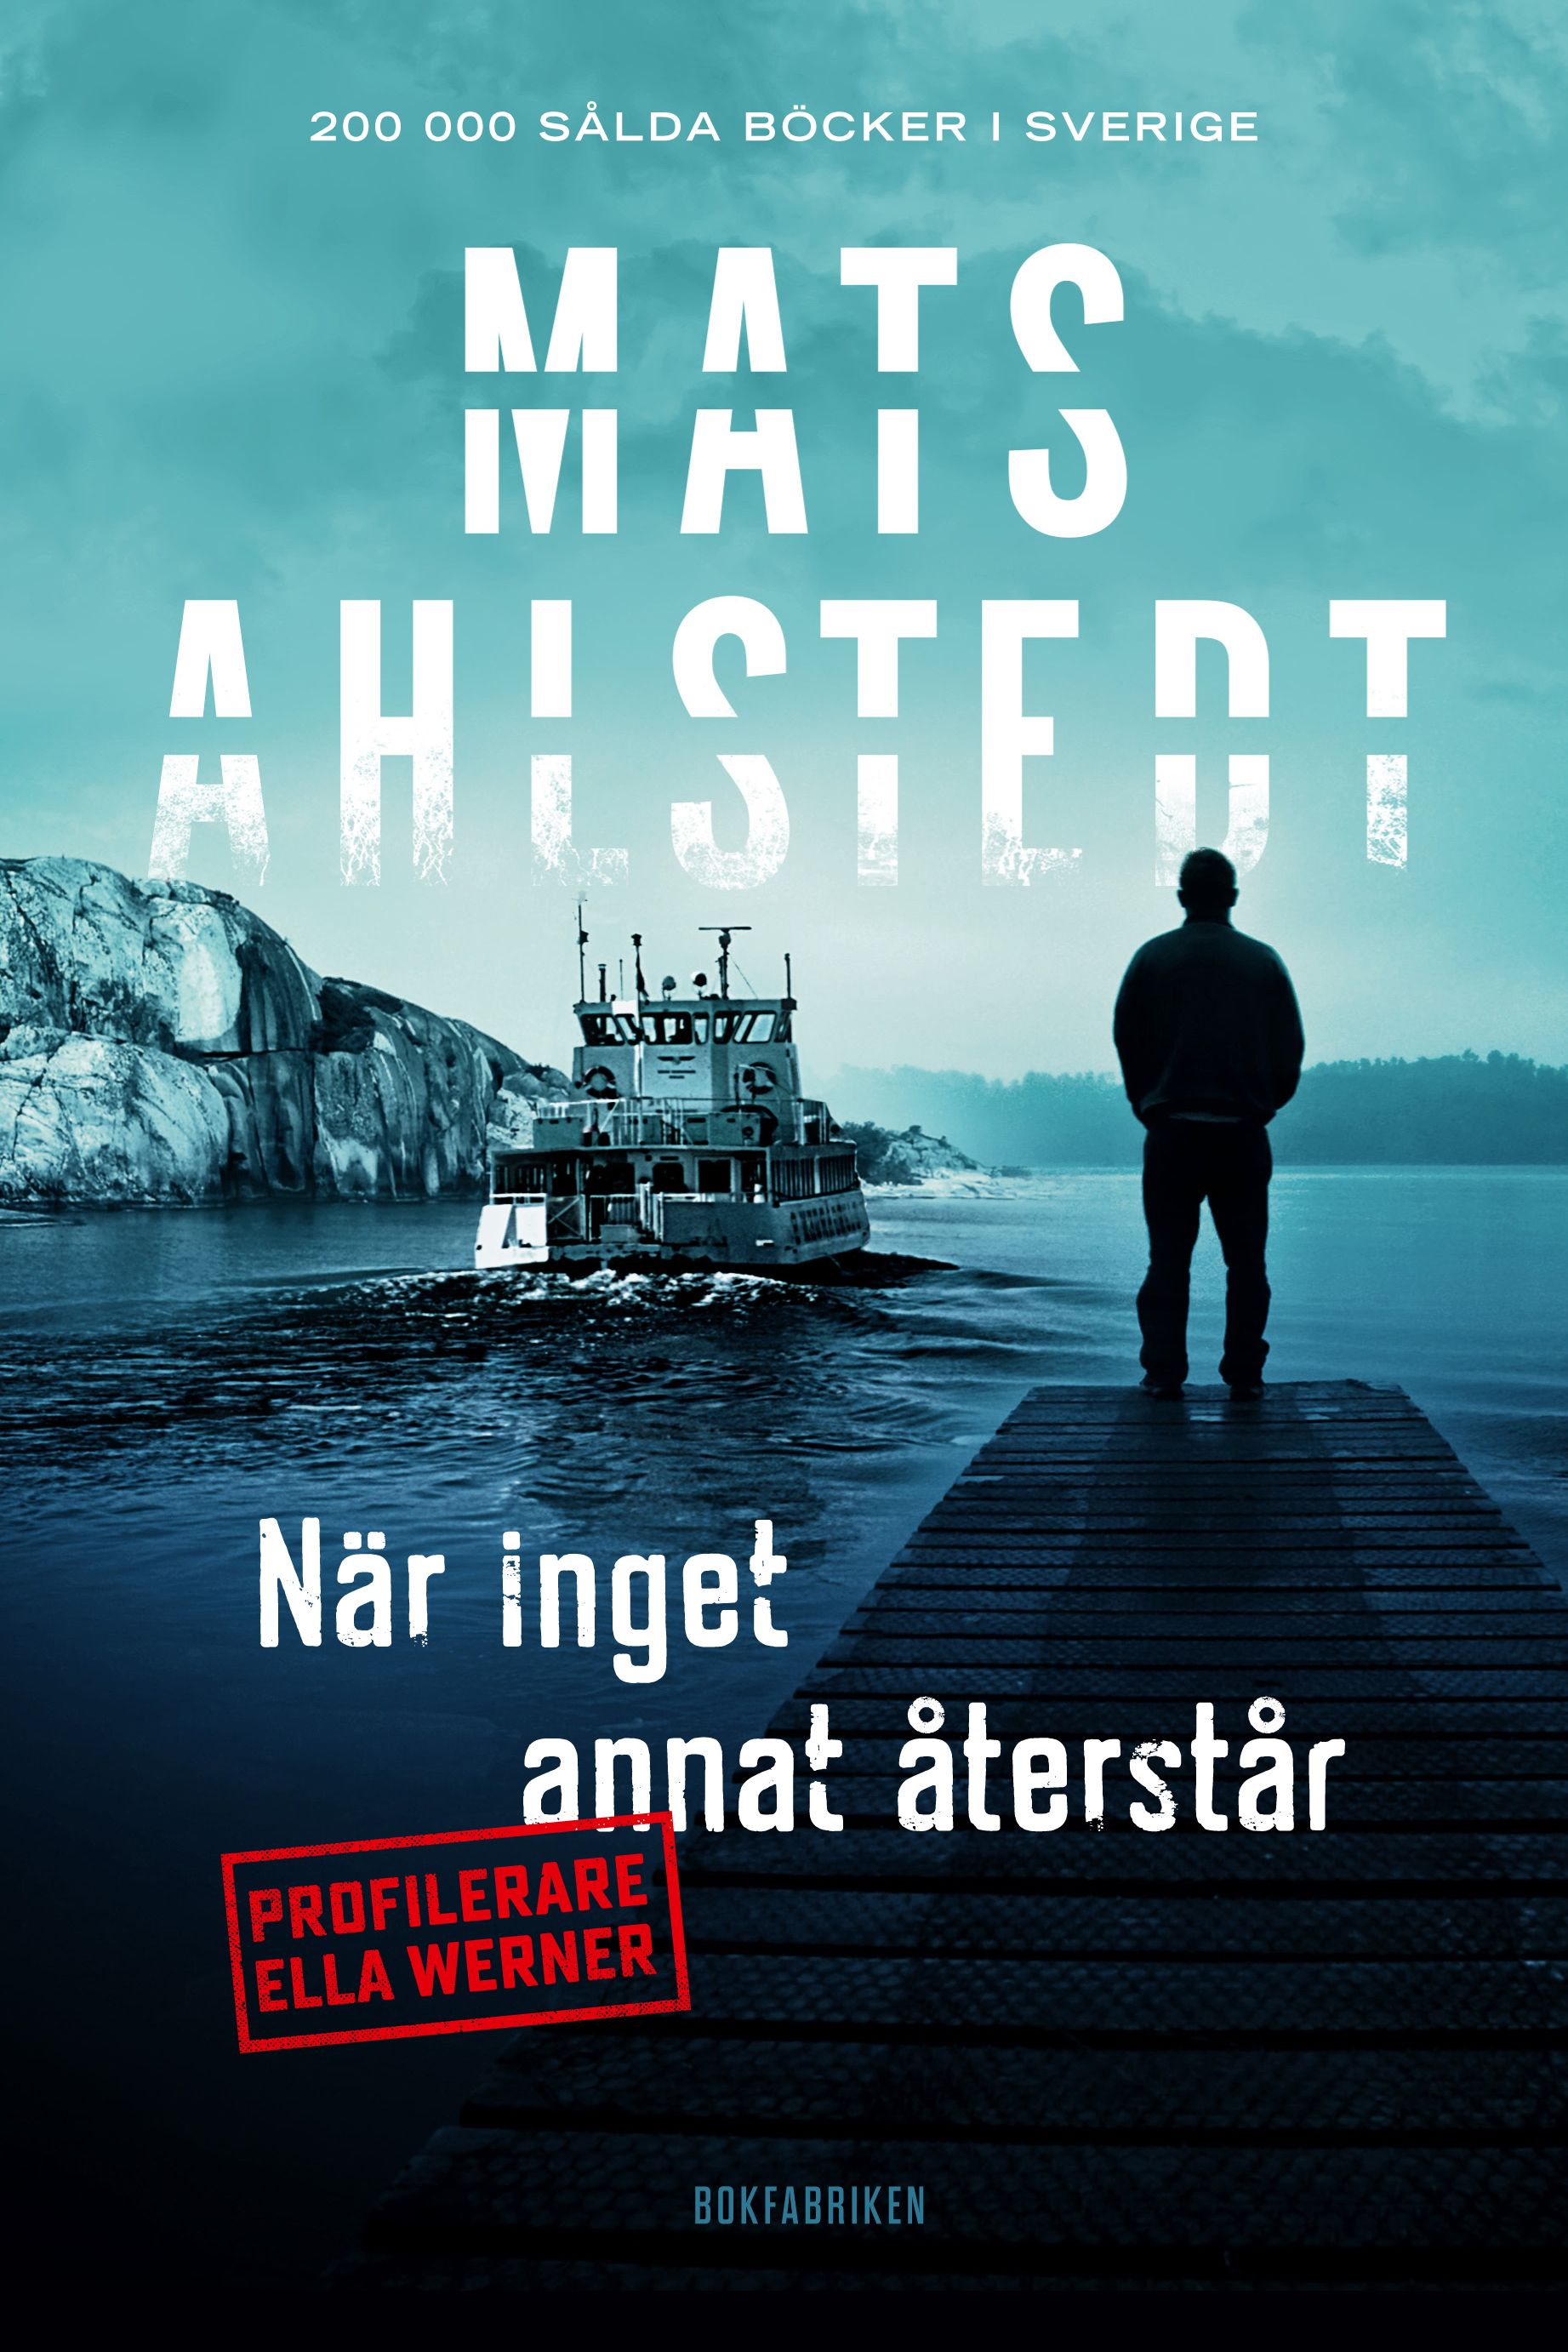 När inget annat återstår, eBook by Mats Ahlstedt